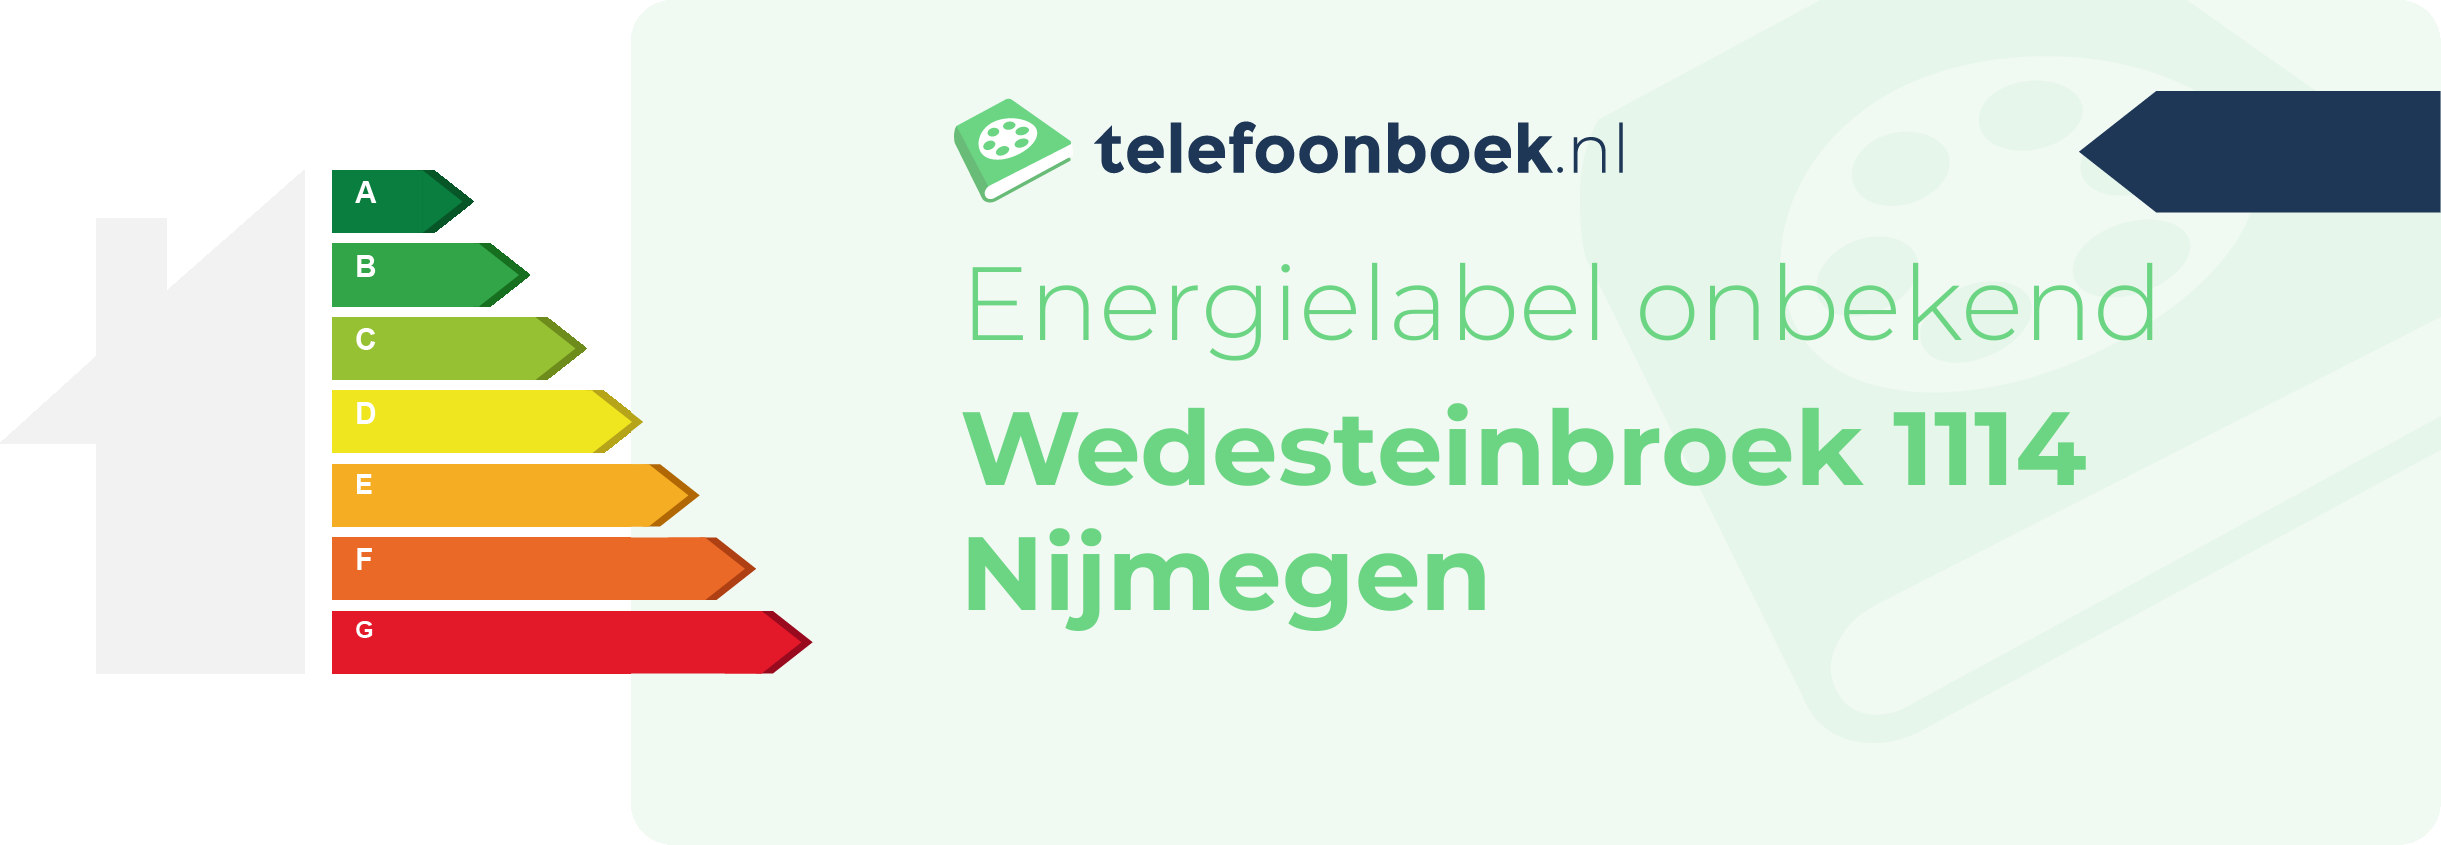 Energielabel Wedesteinbroek 1114 Nijmegen